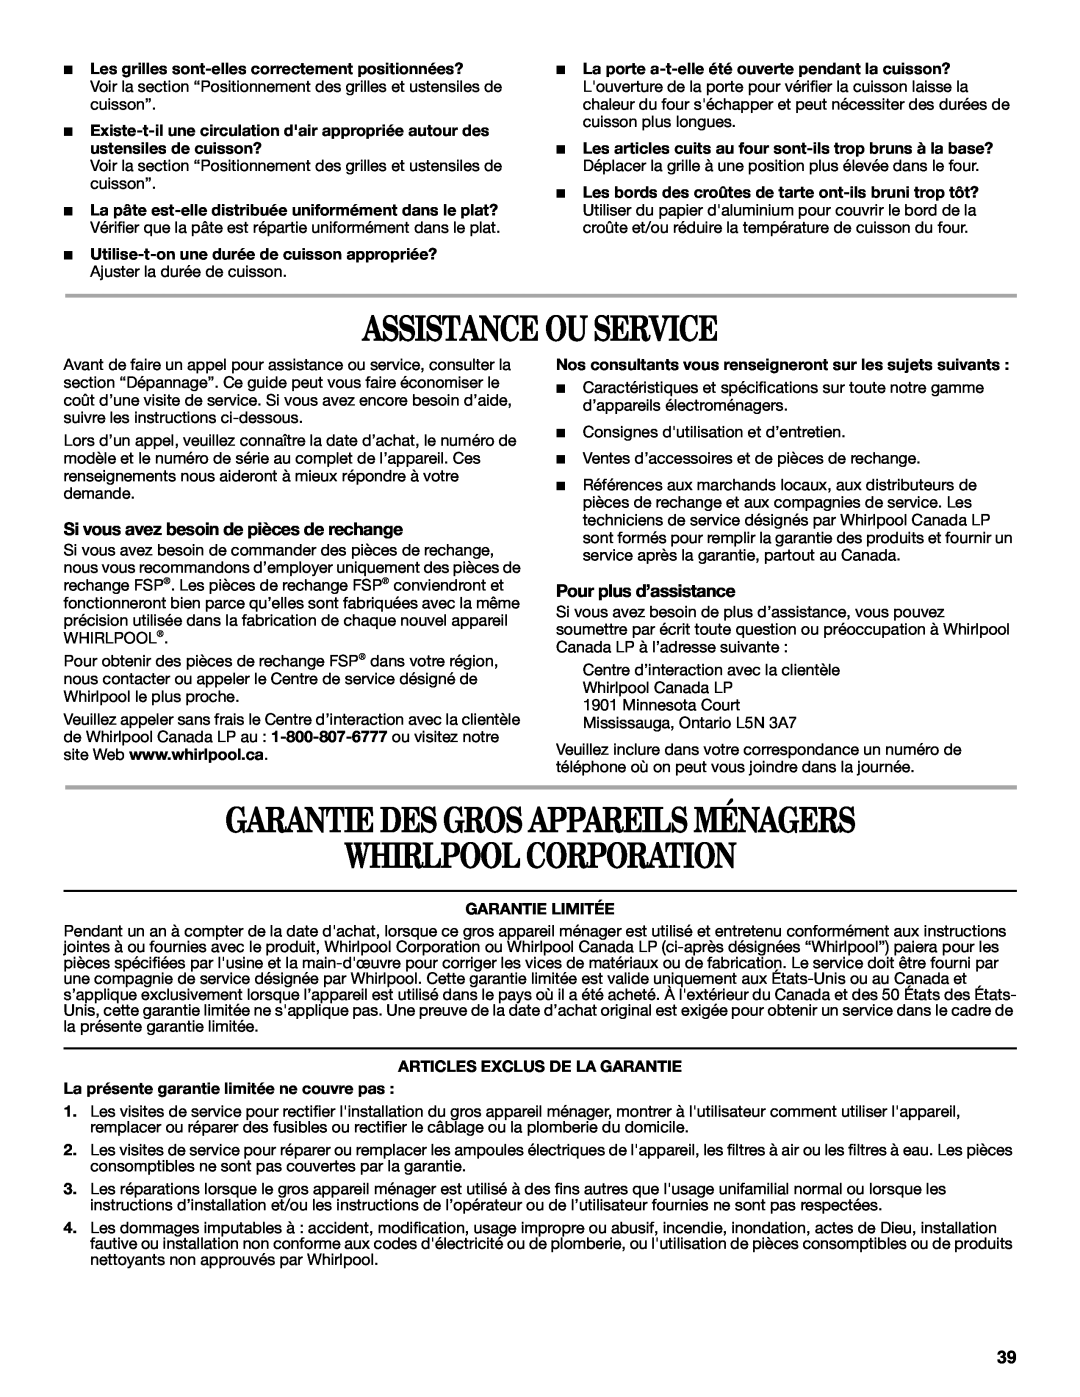 Whirlpool GW397LXU manual Assistance Ou Service, Garantie Des Gros Appareils Ménagers Whirlpool Corporation 